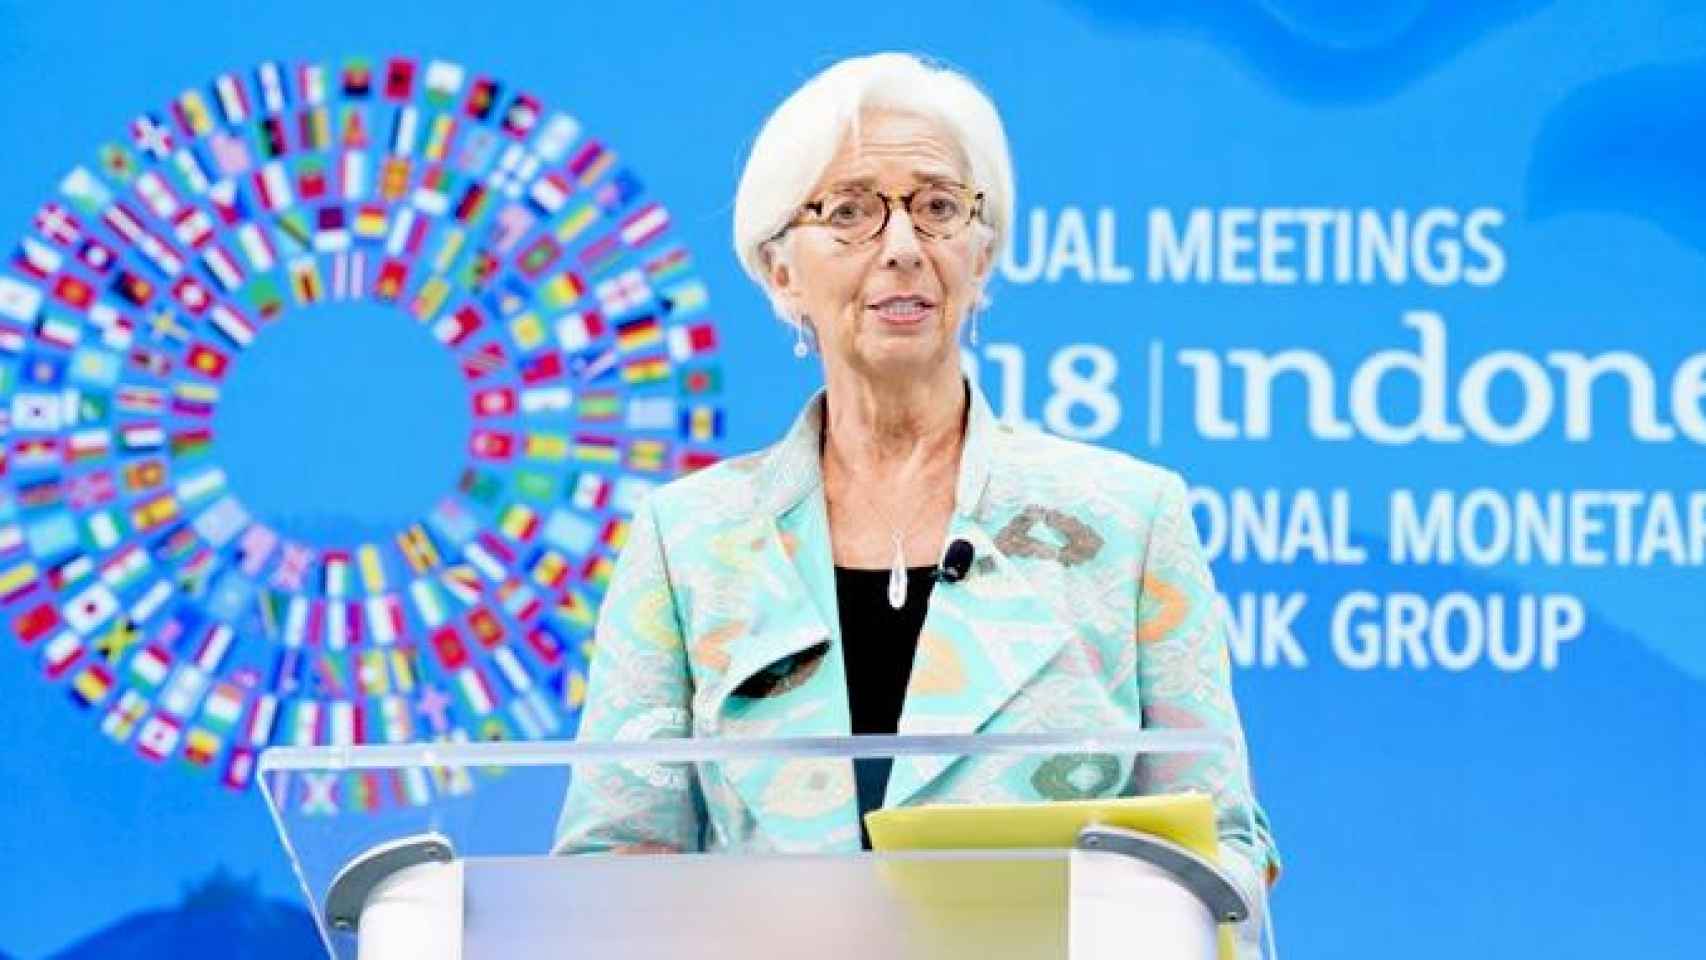 Christine Lagarde, la presidenta del FMI en la rueda de prensa para comunicar las nuevas previsiones macroeconómicas mundiales / FMI